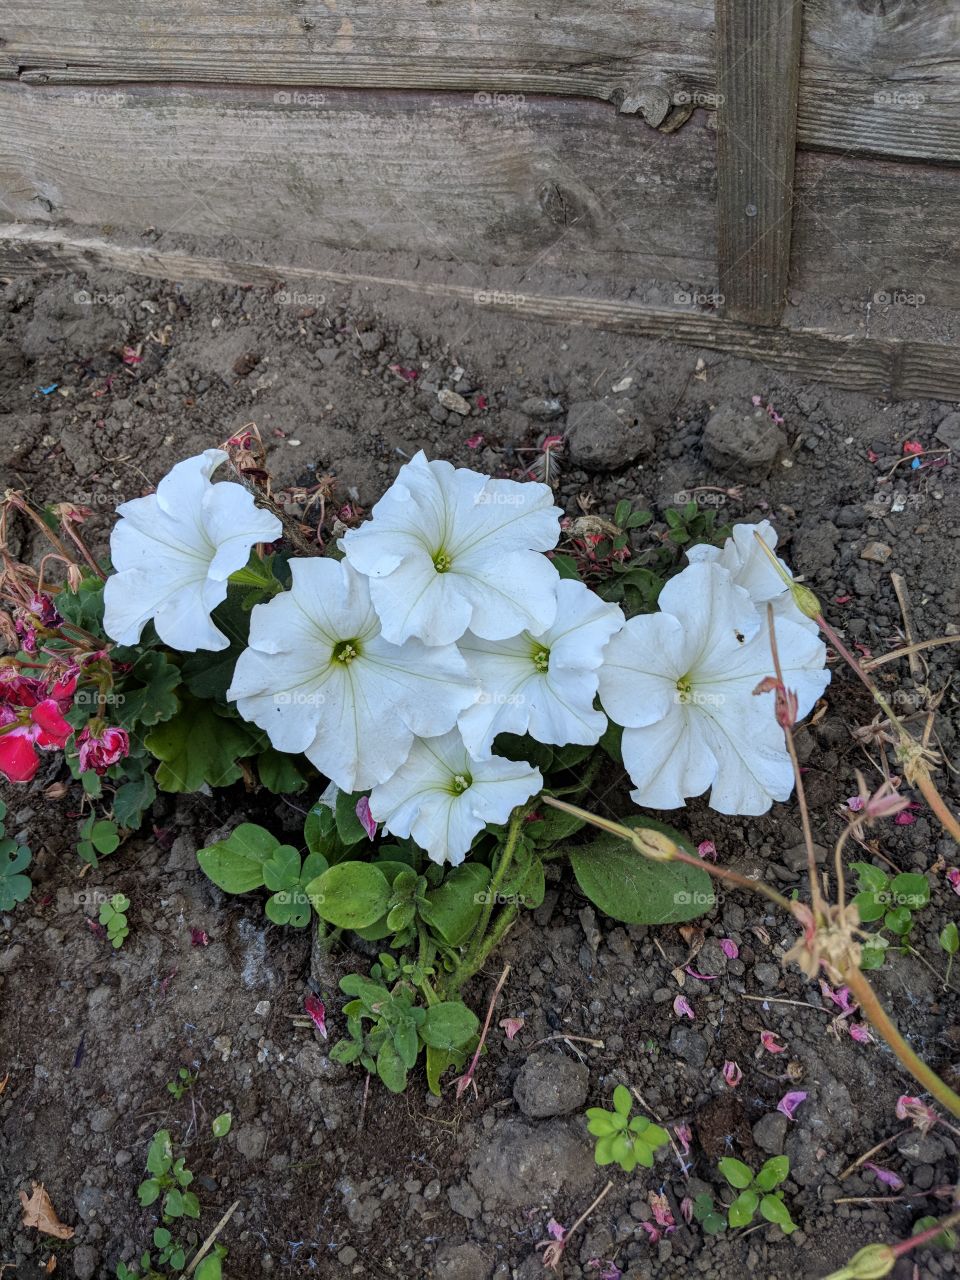 White Flower in a Garden